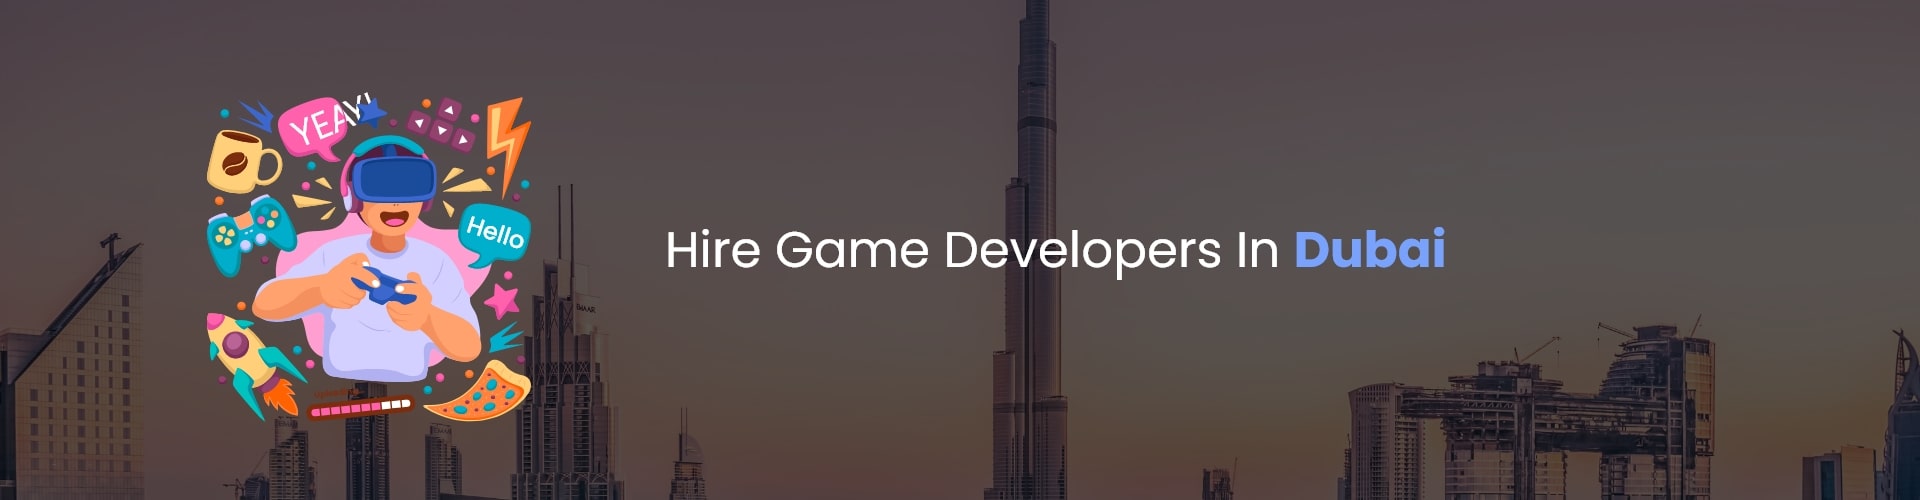 hire game developers in dubai